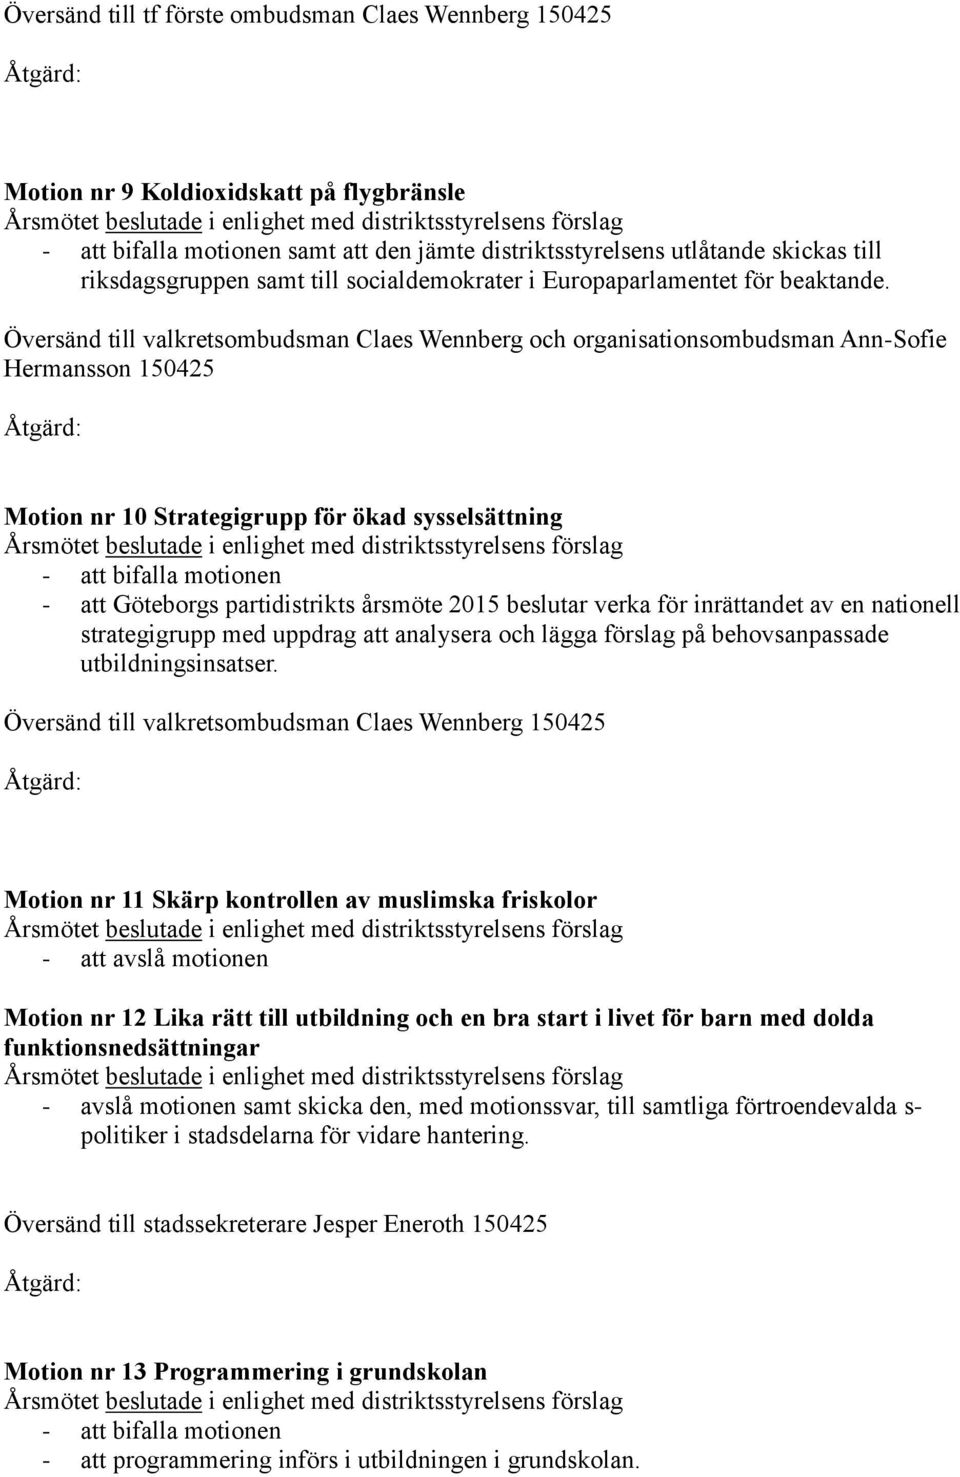 Översänd till valkretsombudsman Claes Wennberg och organisationsombudsman Ann-Sofie Hermansson 150425 Motion nr 10 Strategigrupp för ökad sysselsättning - att Göteborgs partidistrikts årsmöte 2015